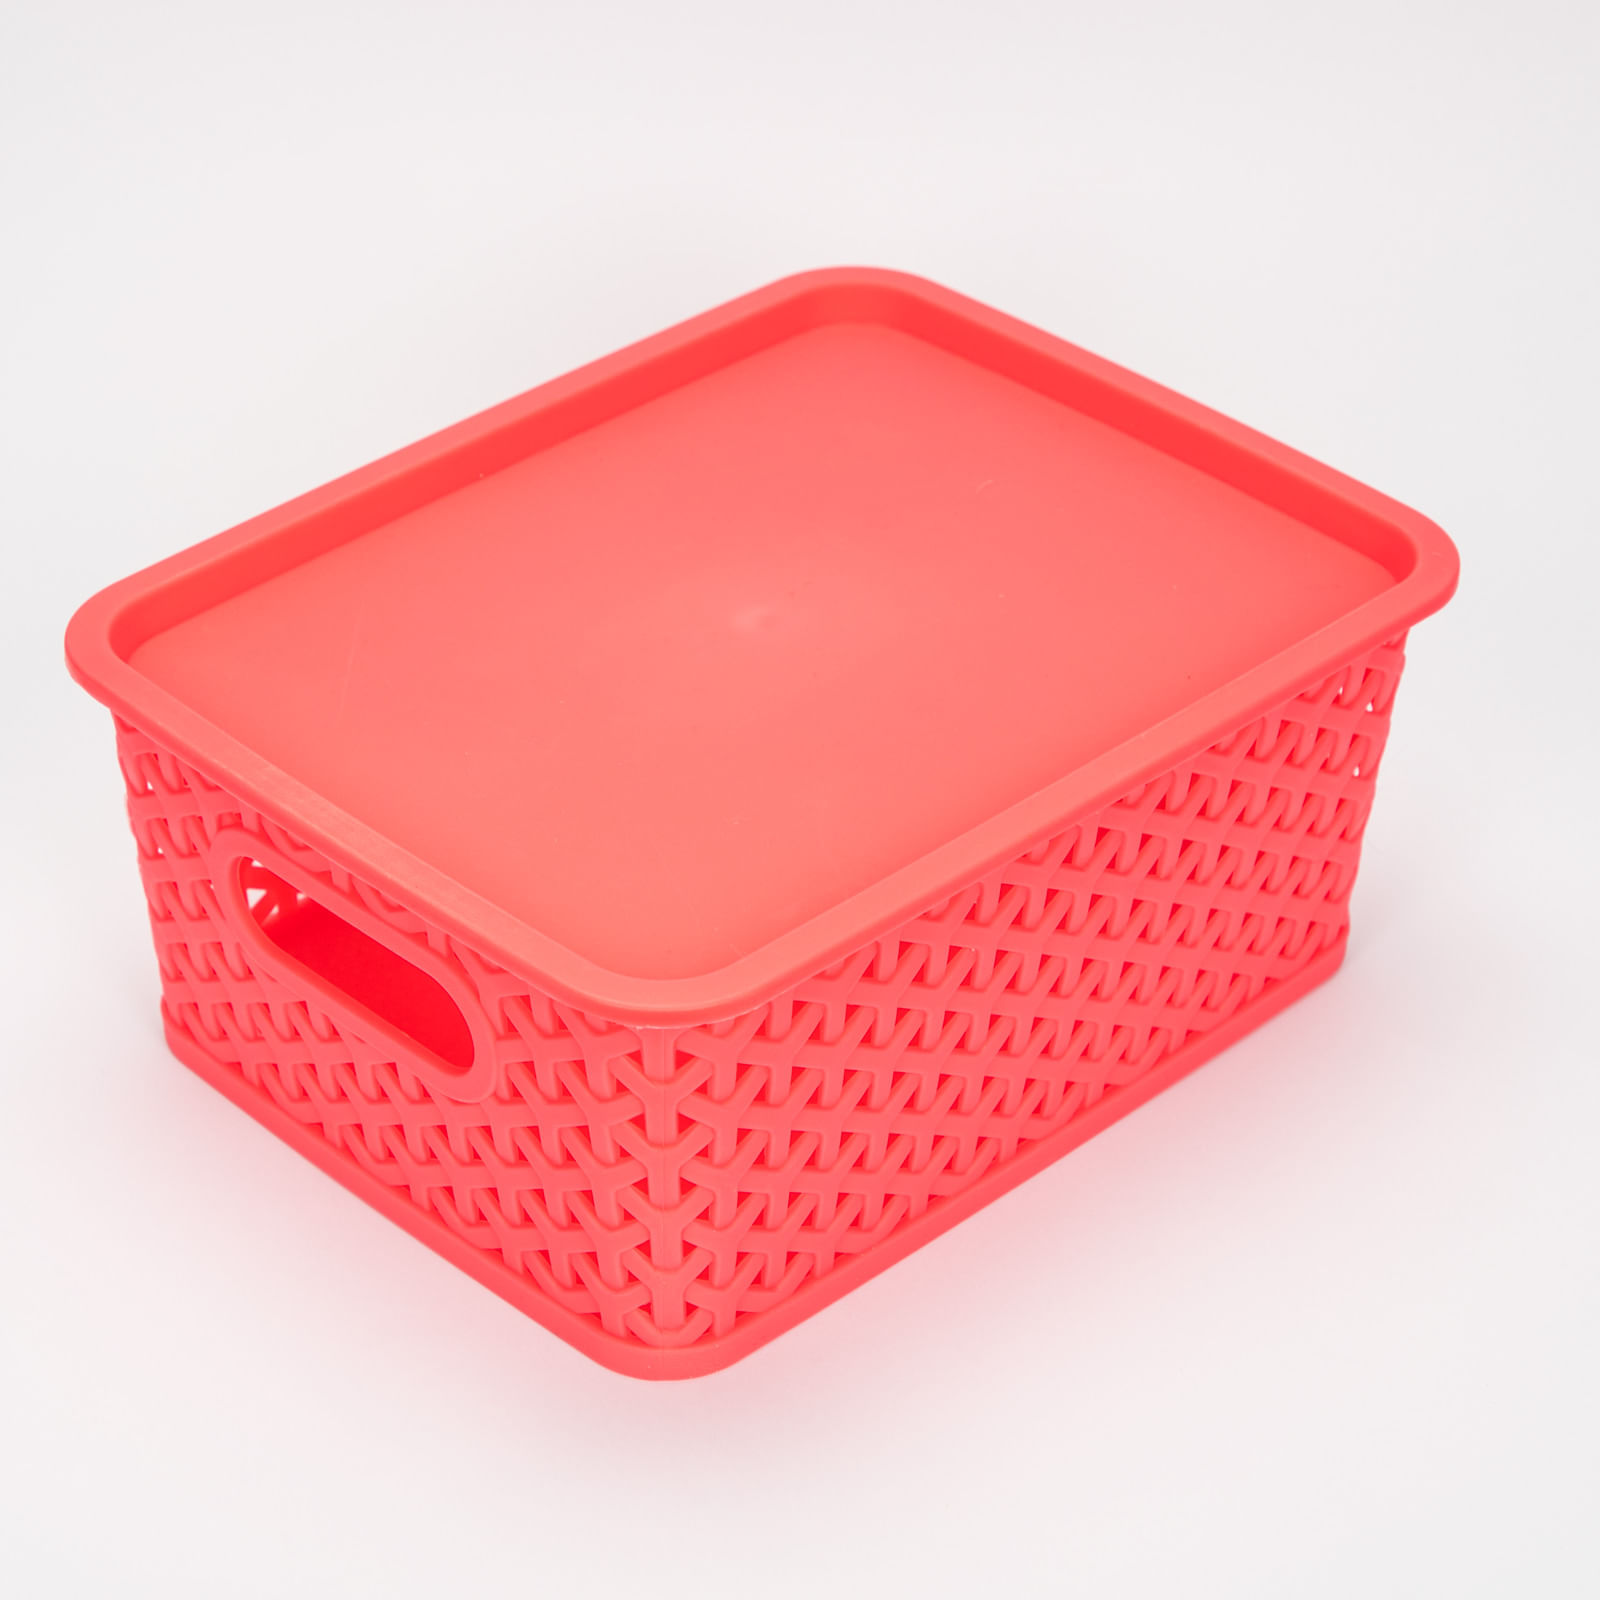 Caja organizadora rosada de 10.5 x 25 x 19.5 cm con tapa